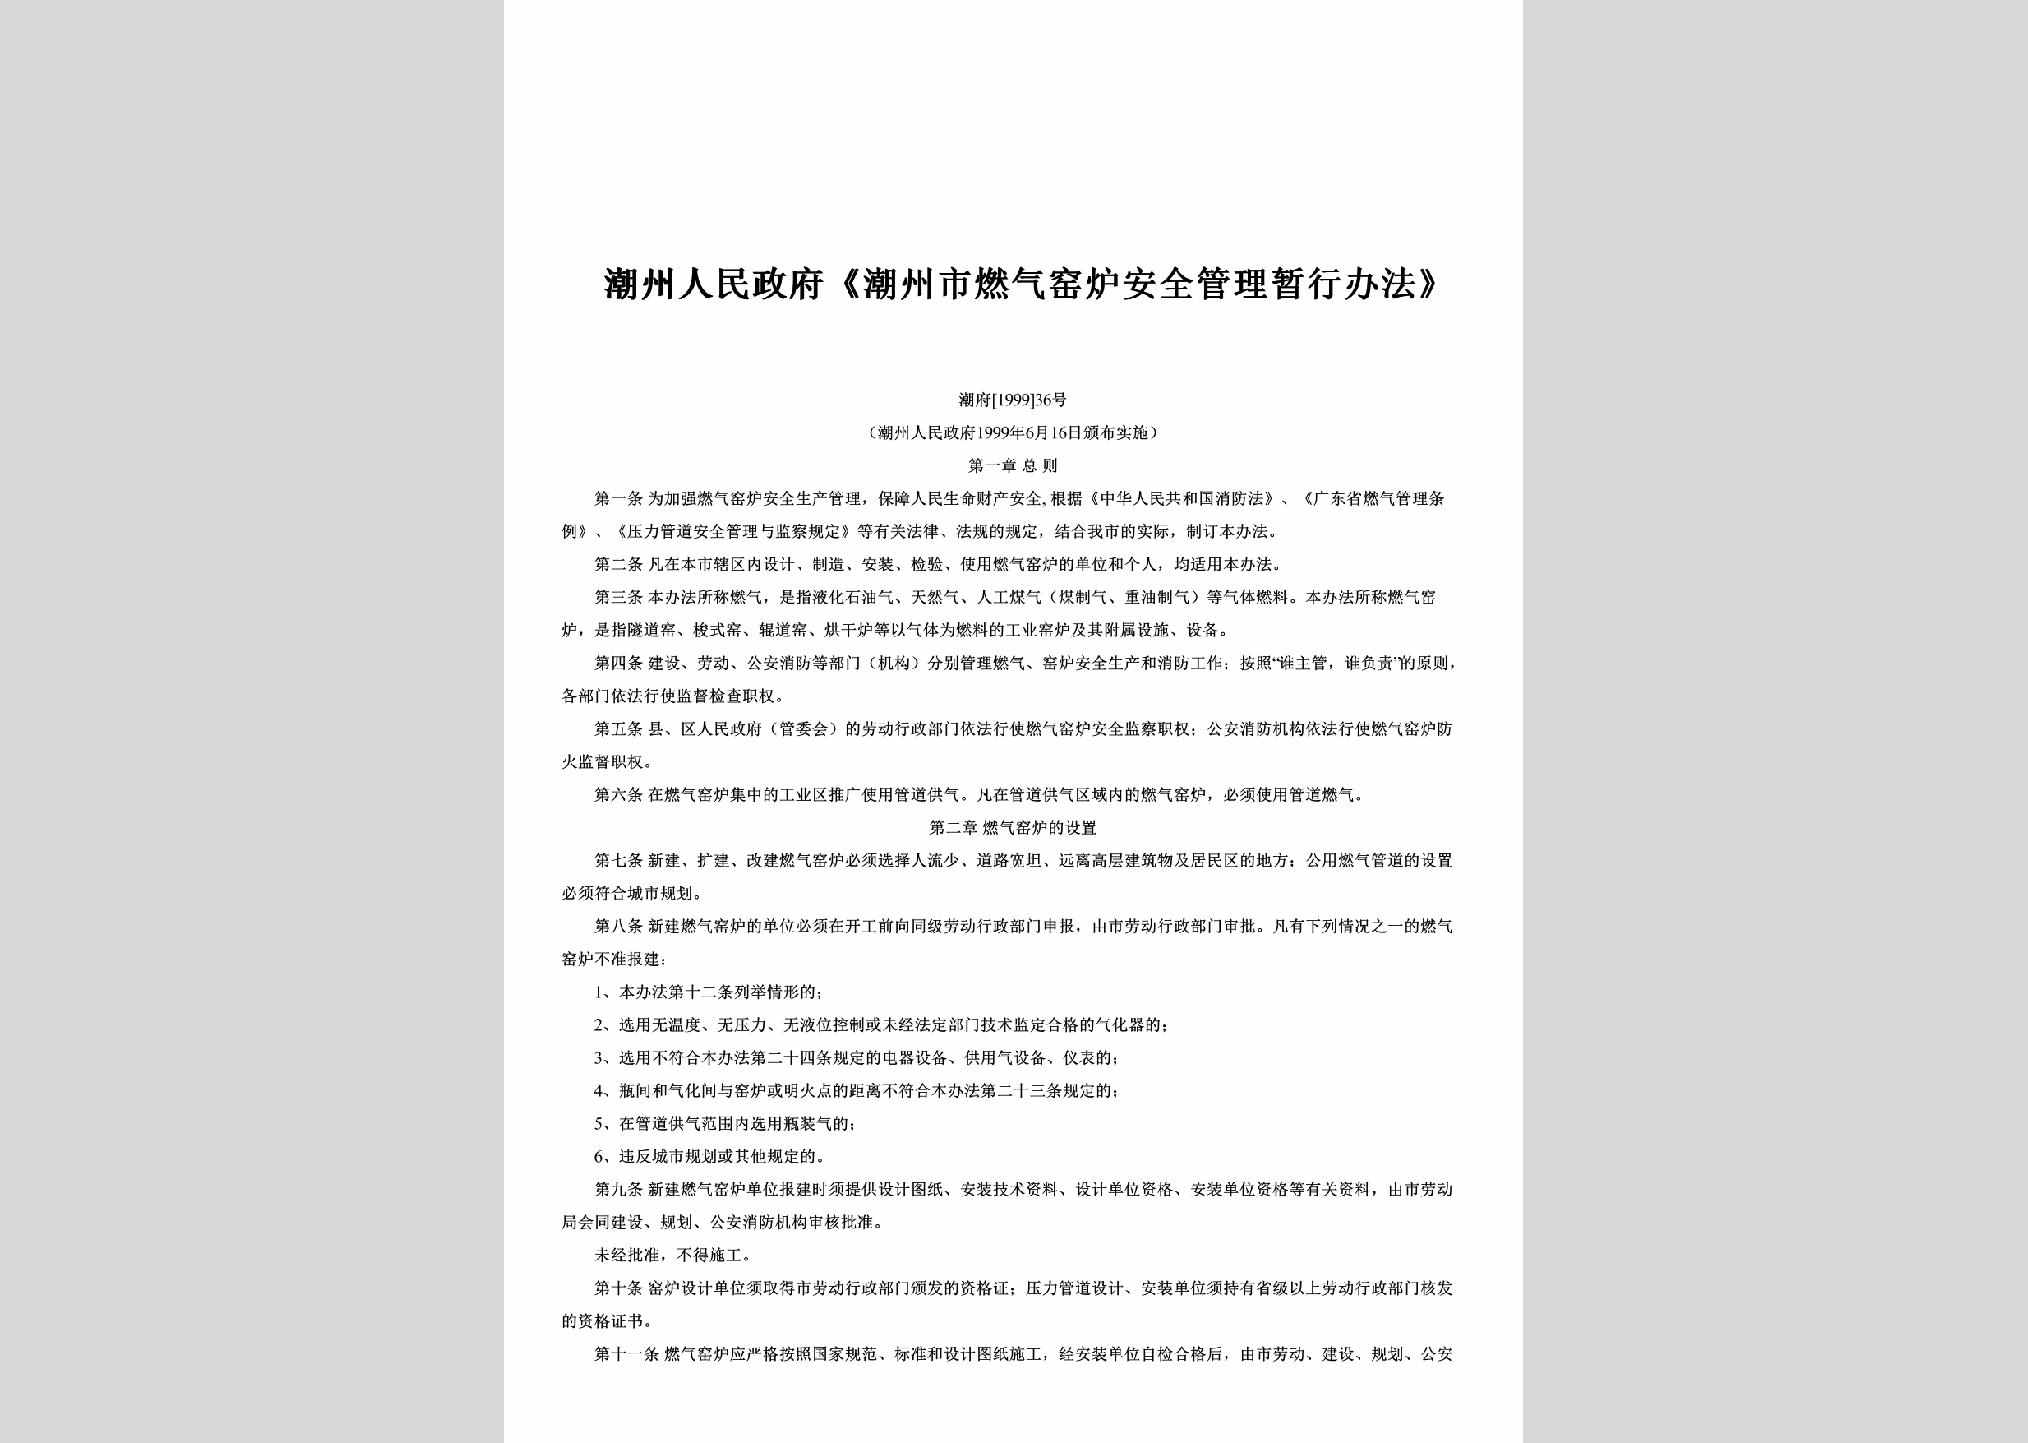 潮府[1999]36号：《潮州市燃气窑炉安全管理暂行办法》